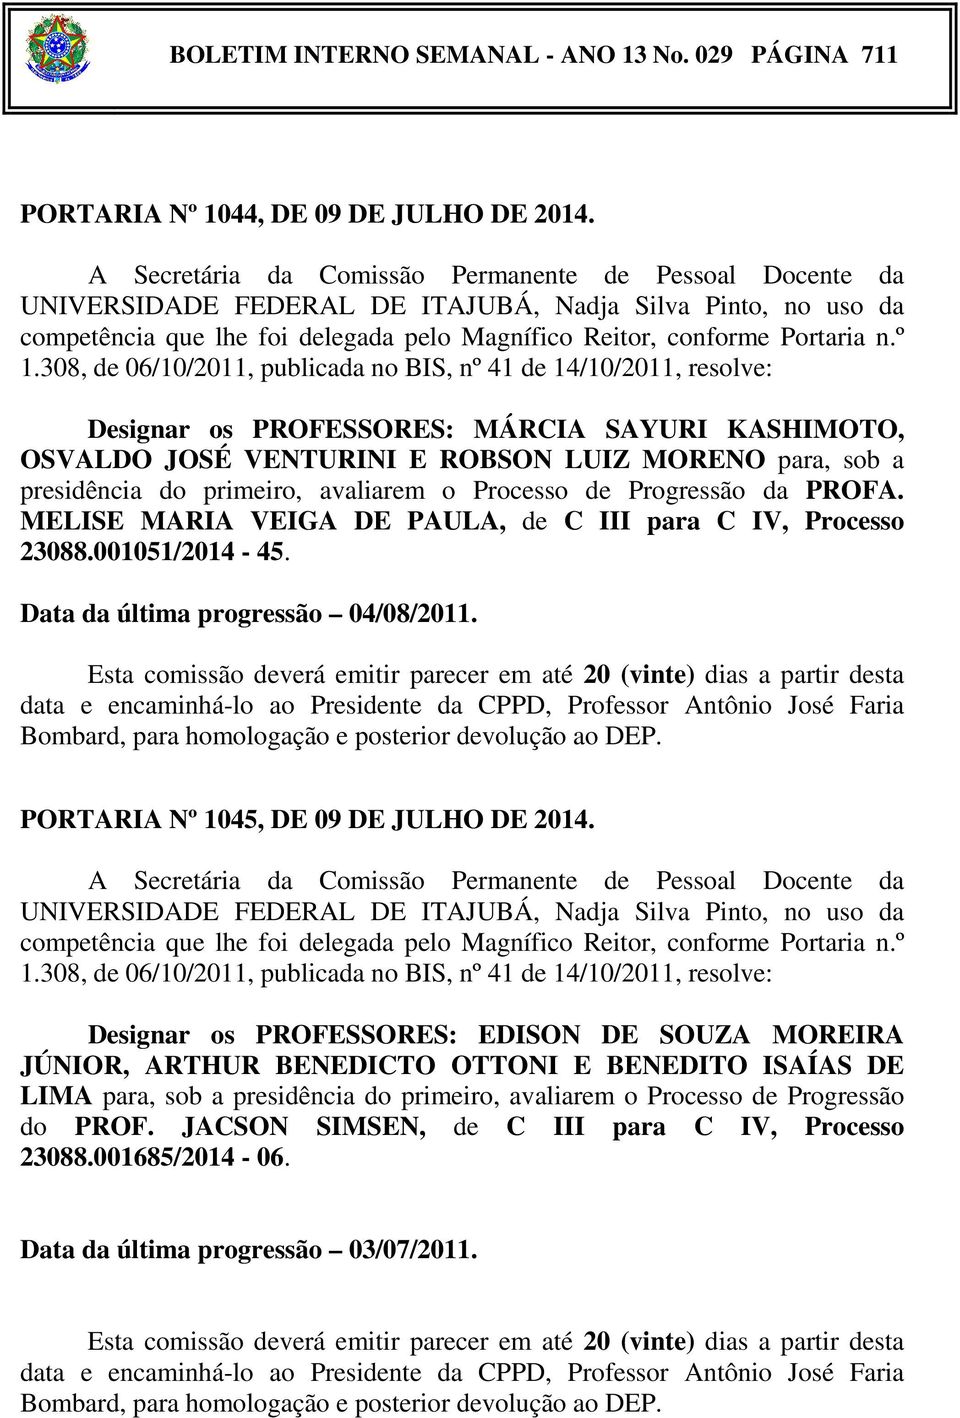 MELISE MARIA VEIGA DE PAULA, de C III para C IV, Processo 23088.001051/2014-45. Data da última progressão 04/08/2011. PORTARIA Nº 1045, DE 09 DE JULHO DE 2014.